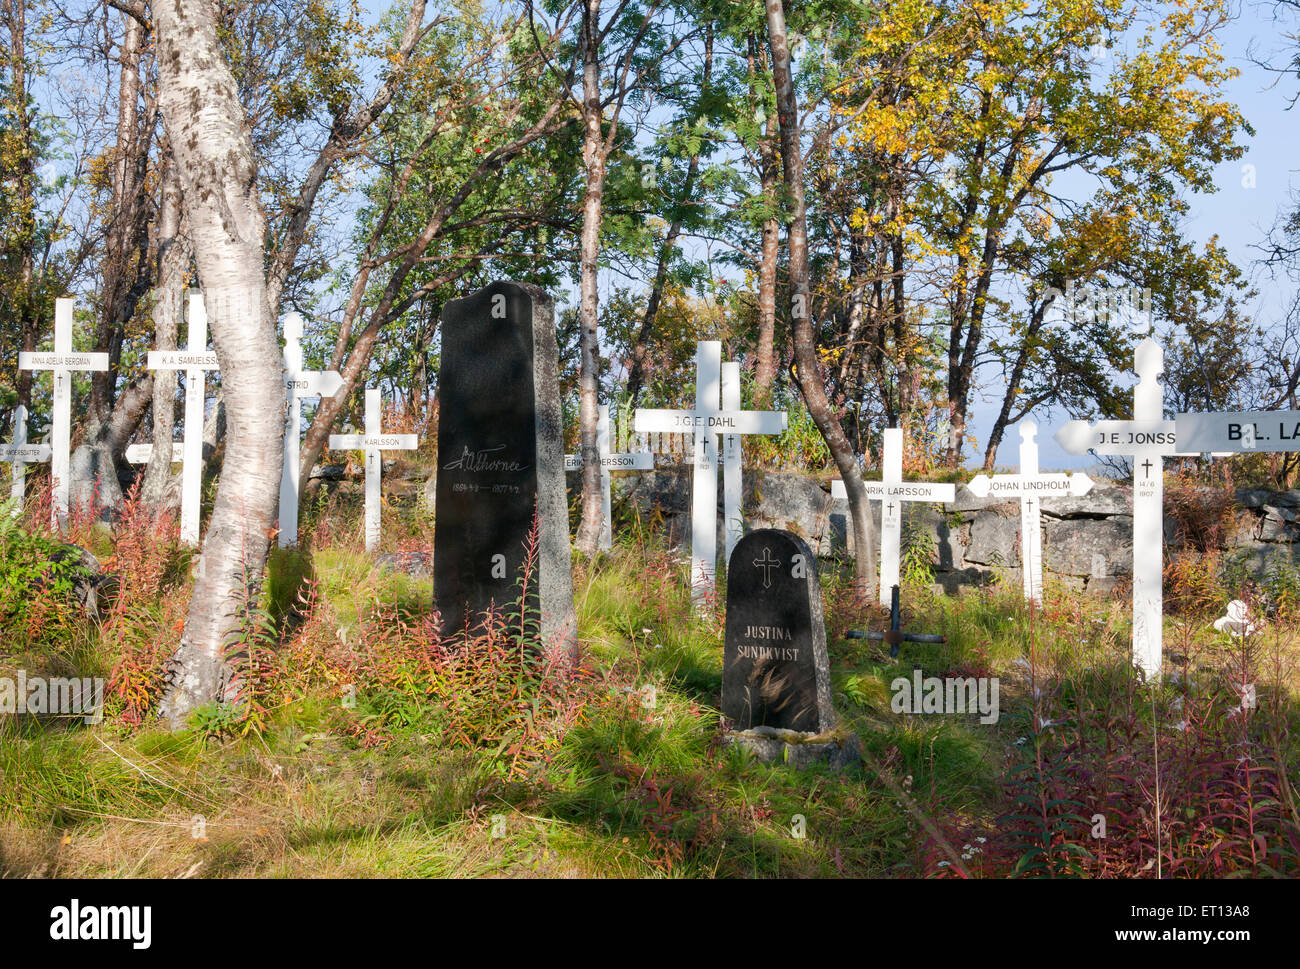 BJORKLIDEN, Suecia en septiembre de 2008. Cruces blancas en el cementerio en Sep.08, 2014. Cementerio Navvy en Sunshine, uso Editorial. Foto de stock